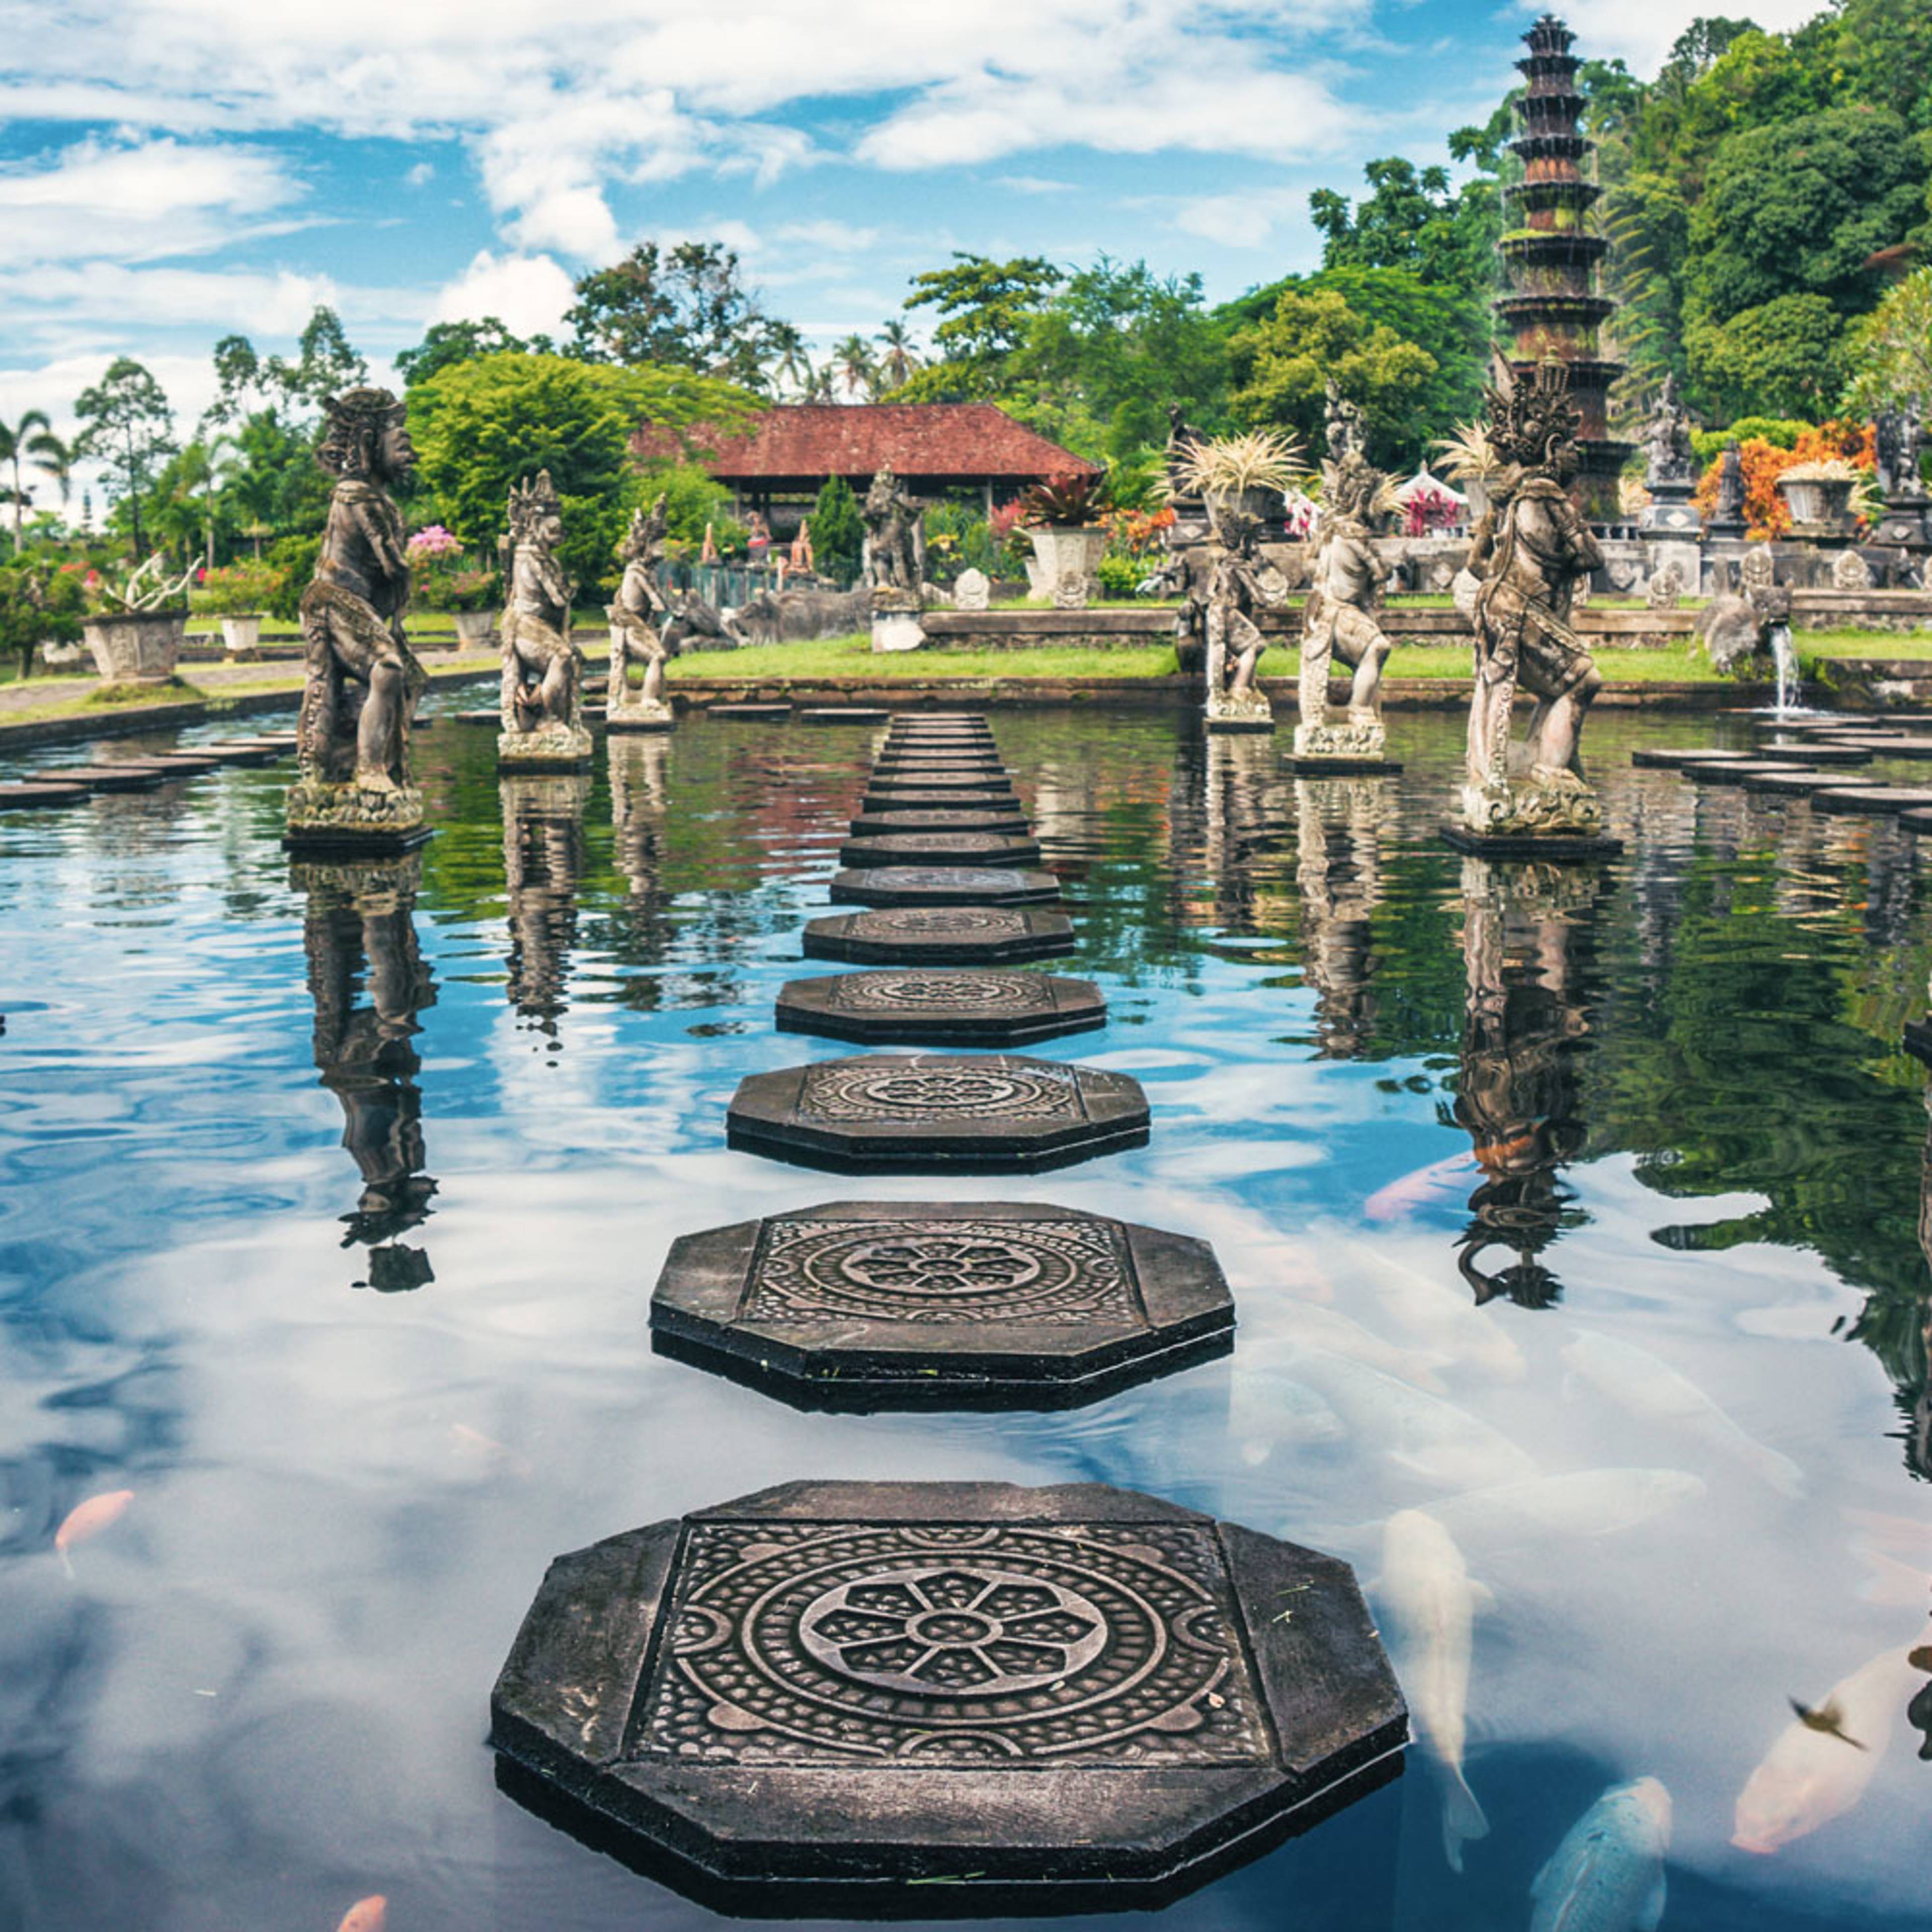 Zwei Wochen nach Bali - Reise jetzt individuell gestalten